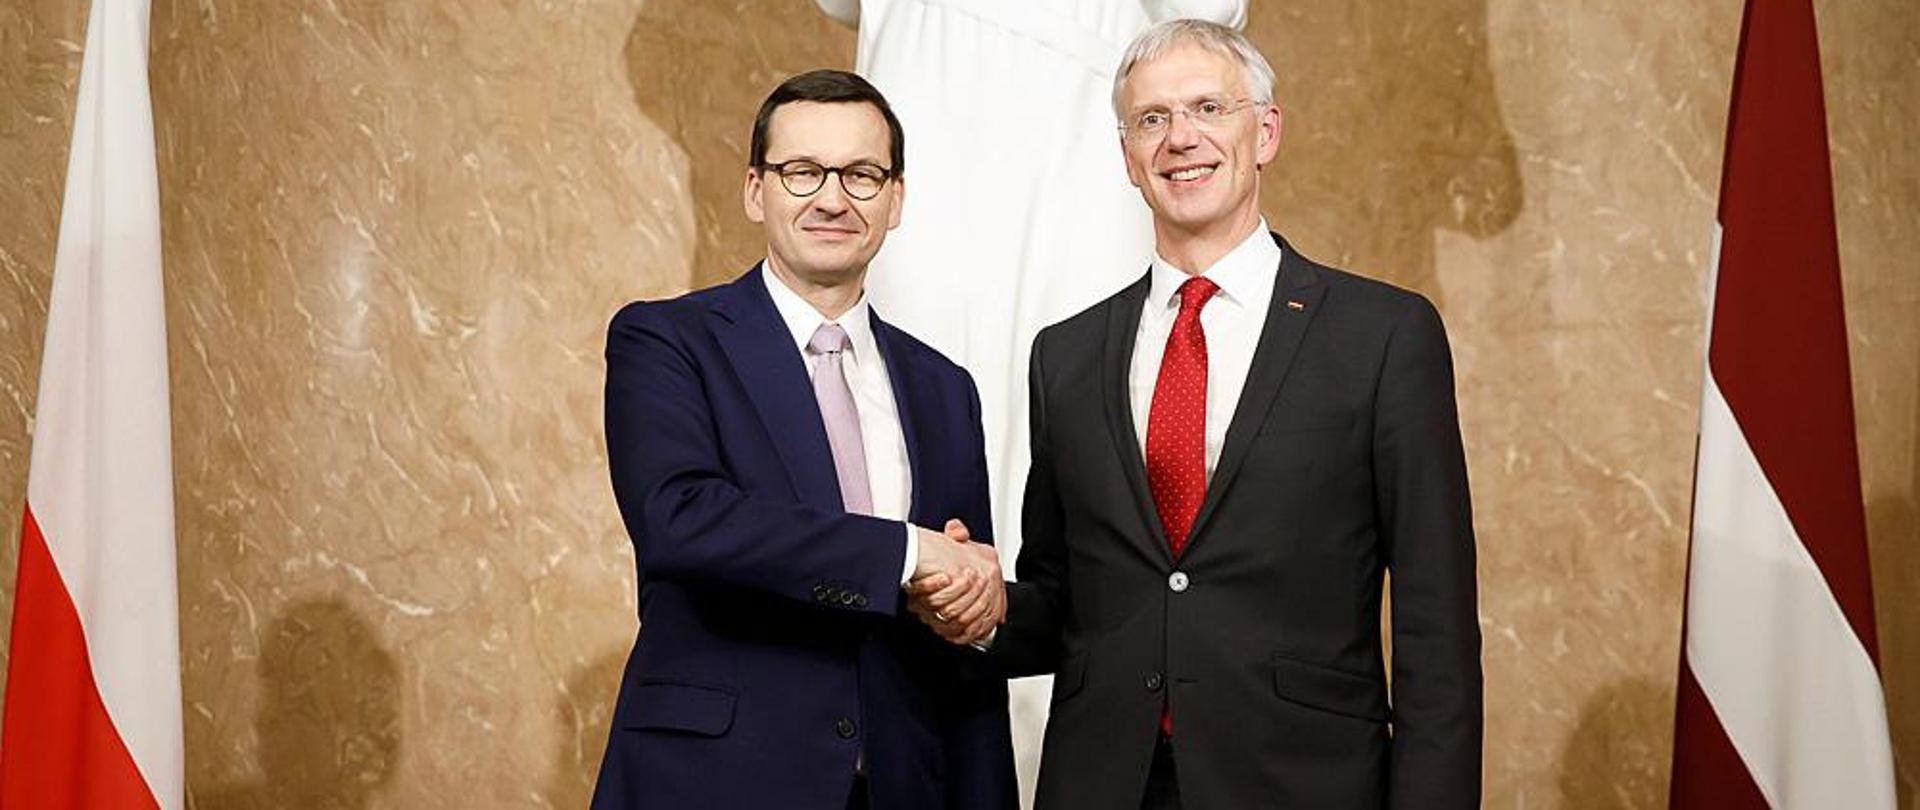 Premier Polski i premier Łotwy - uścisk dłoni.